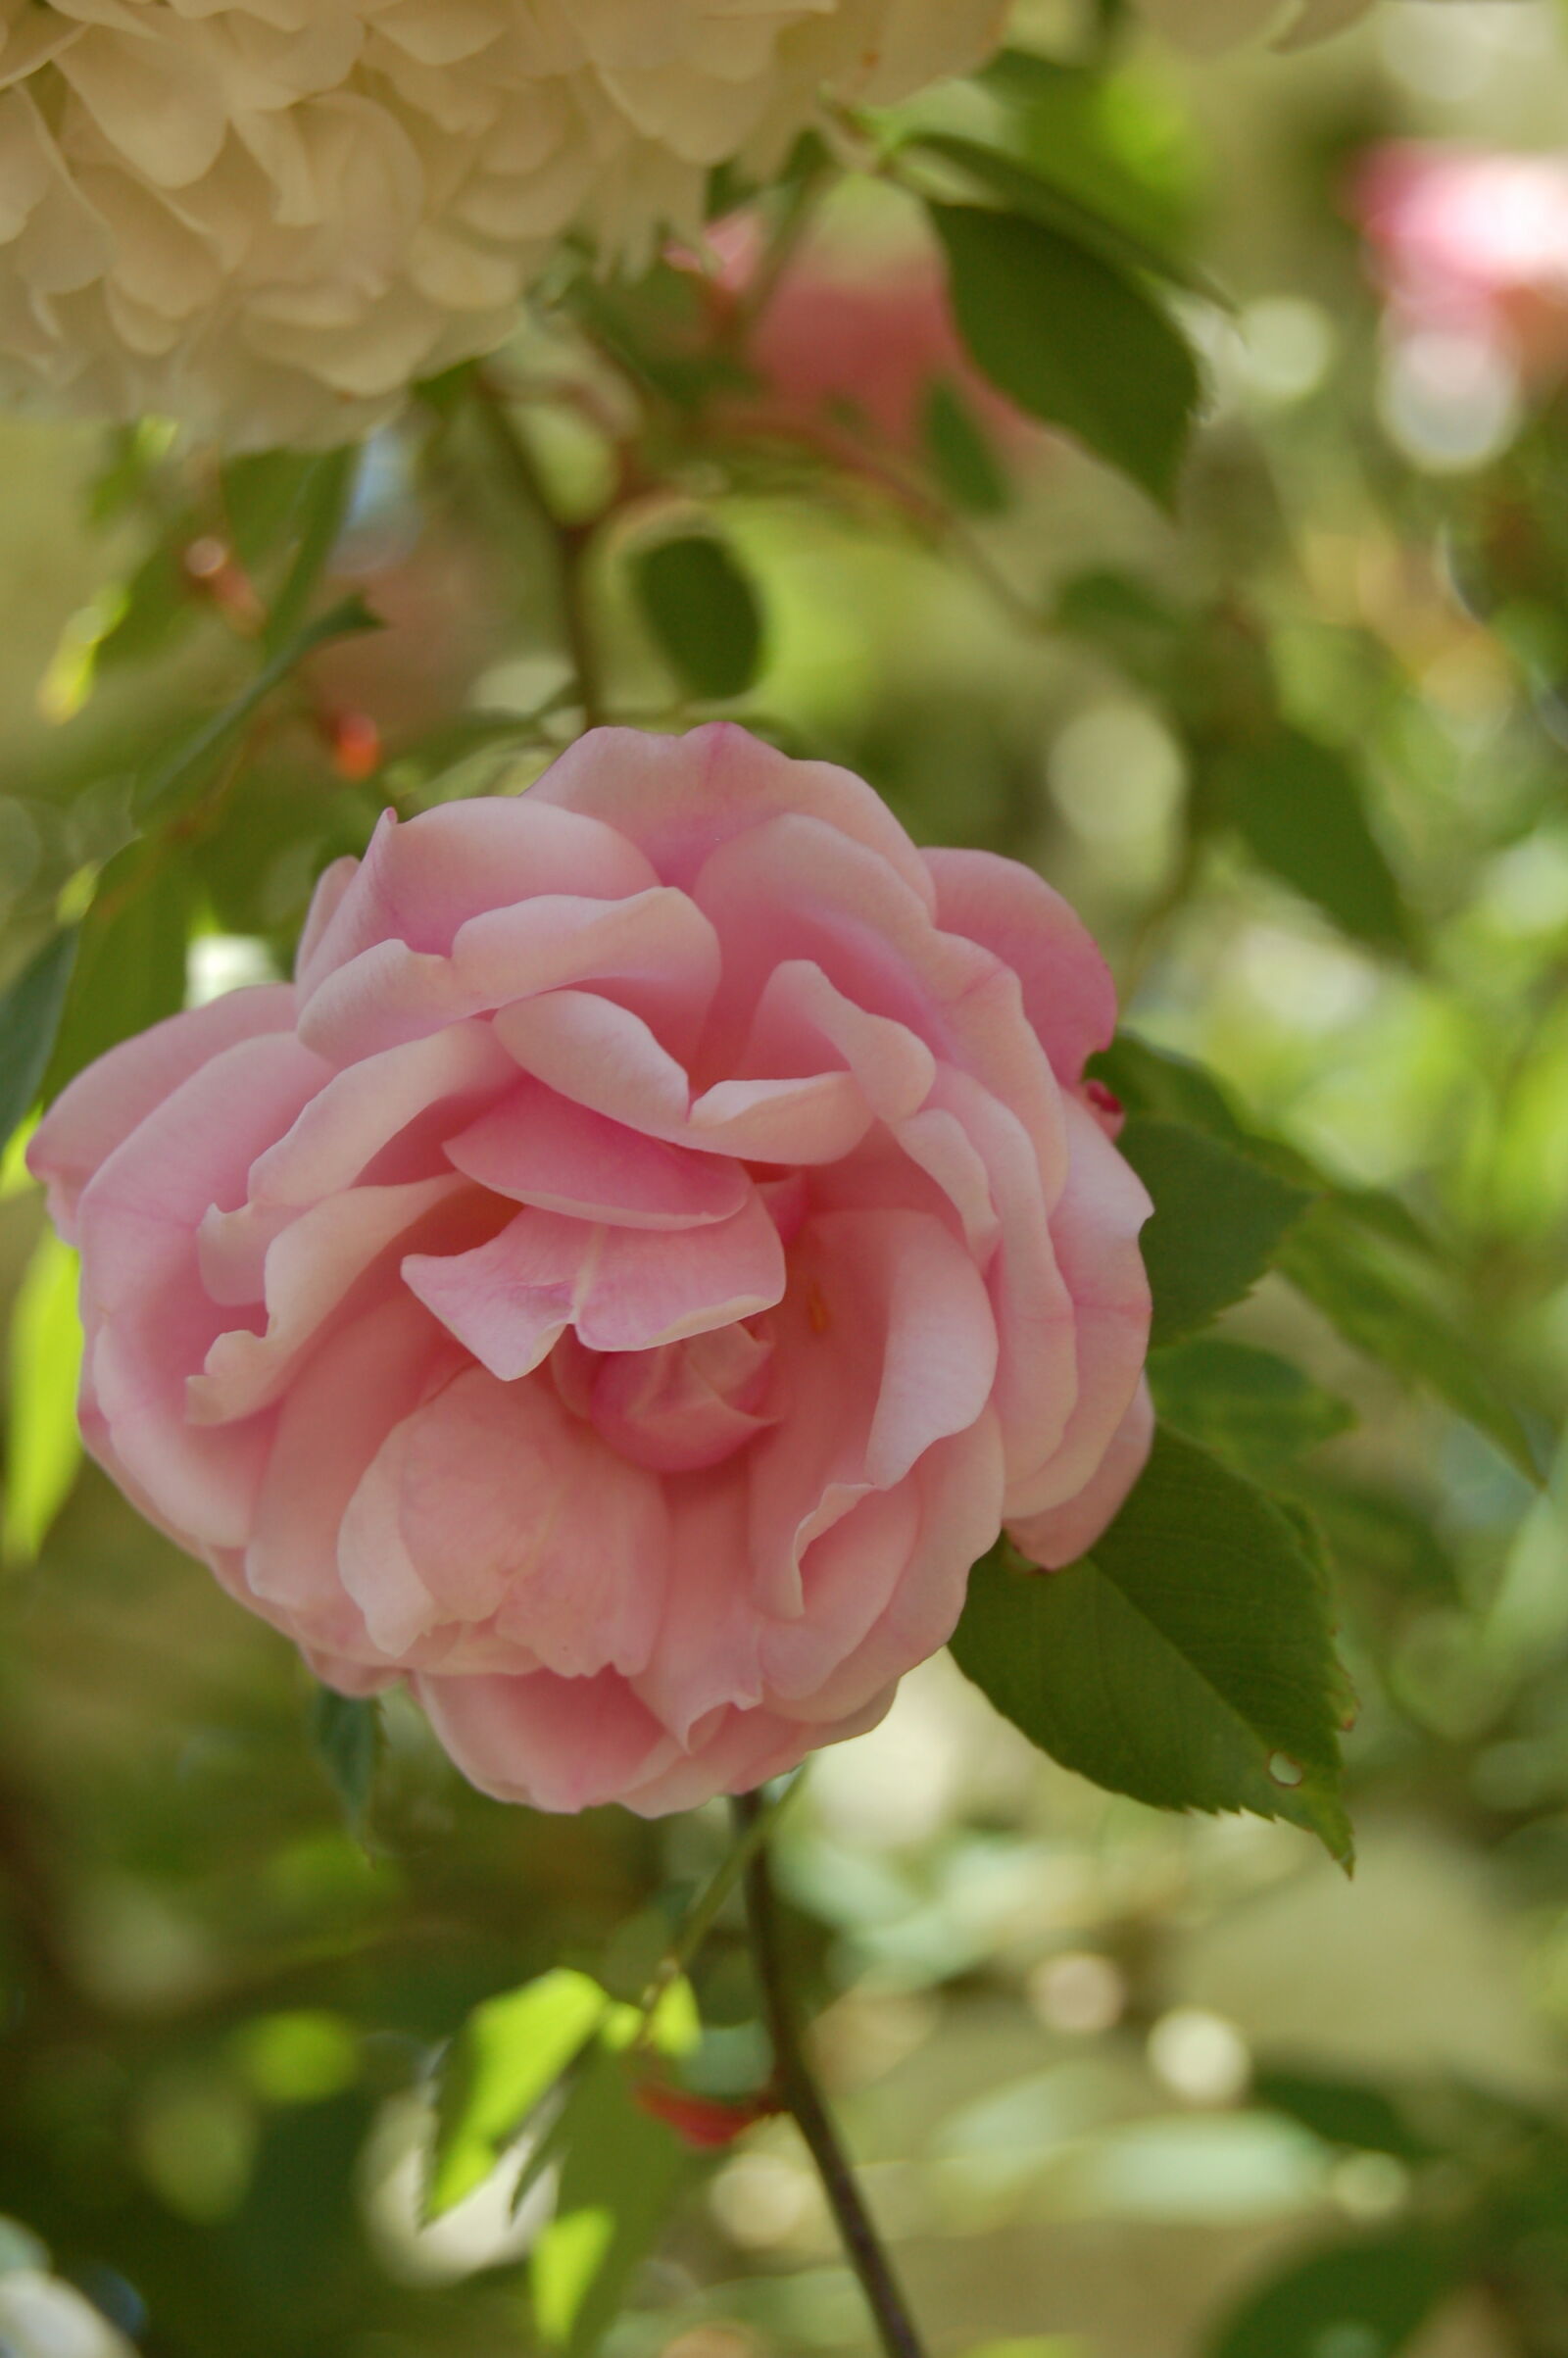 AF-S DX Zoom-Nikkor 18-55mm f/3.5-5.6G ED sample photo. Delicate, flower, flowers, pink photography